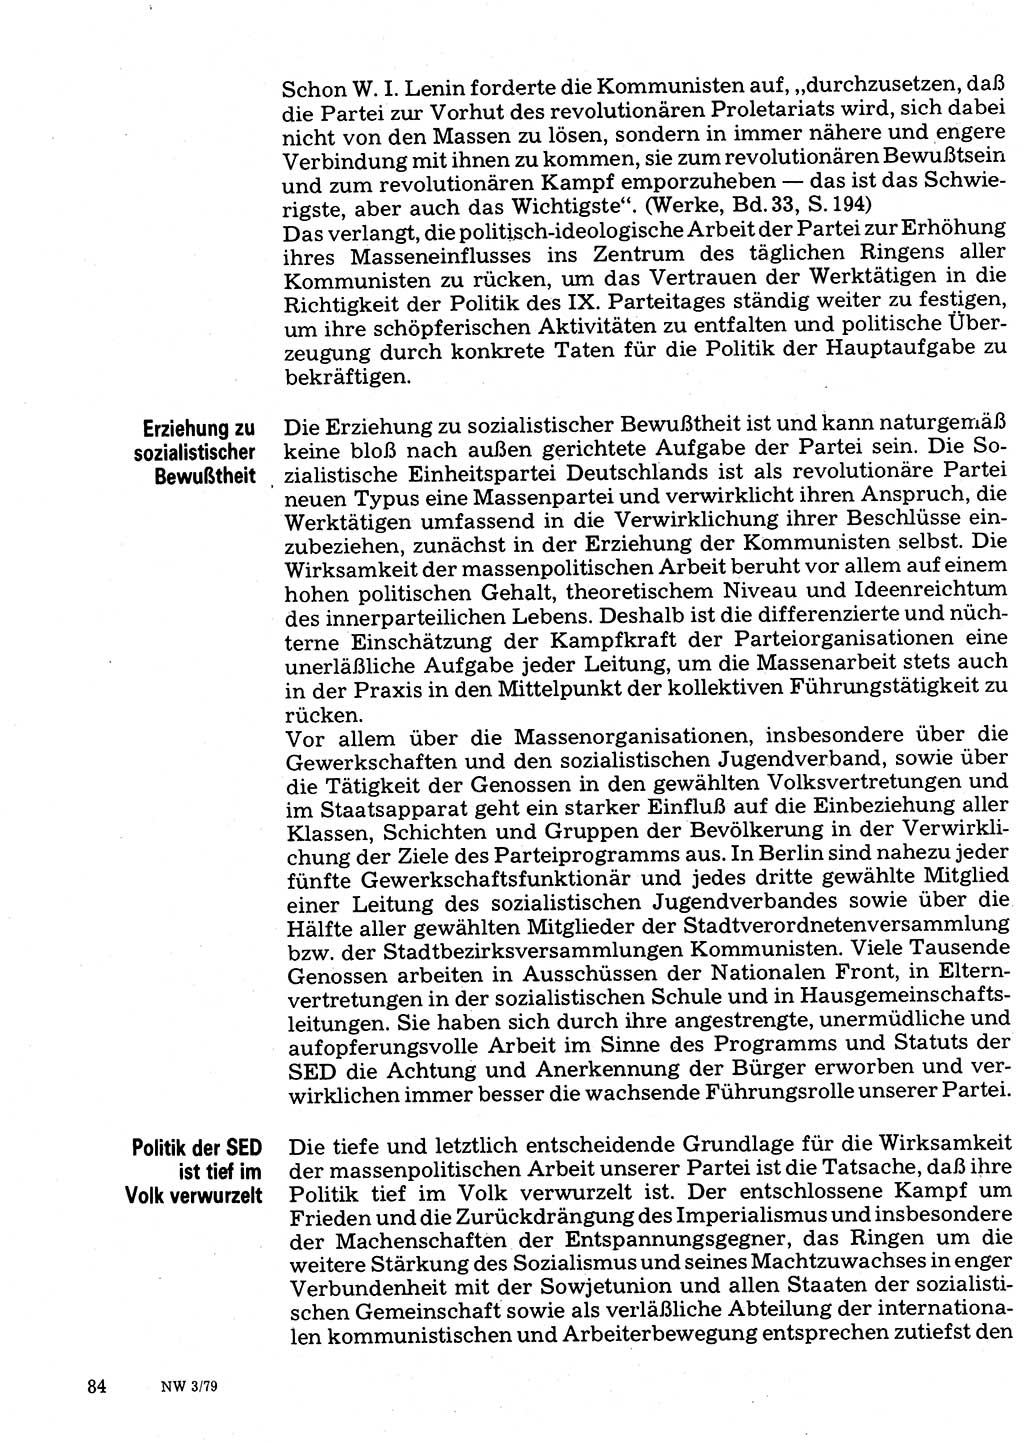 Neuer Weg (NW), Organ des Zentralkomitees (ZK) der SED (Sozialistische Einheitspartei Deutschlands) für Fragen des Parteilebens, 34. Jahrgang [Deutsche Demokratische Republik (DDR)] 1979, Seite 84 (NW ZK SED DDR 1979, S. 84)